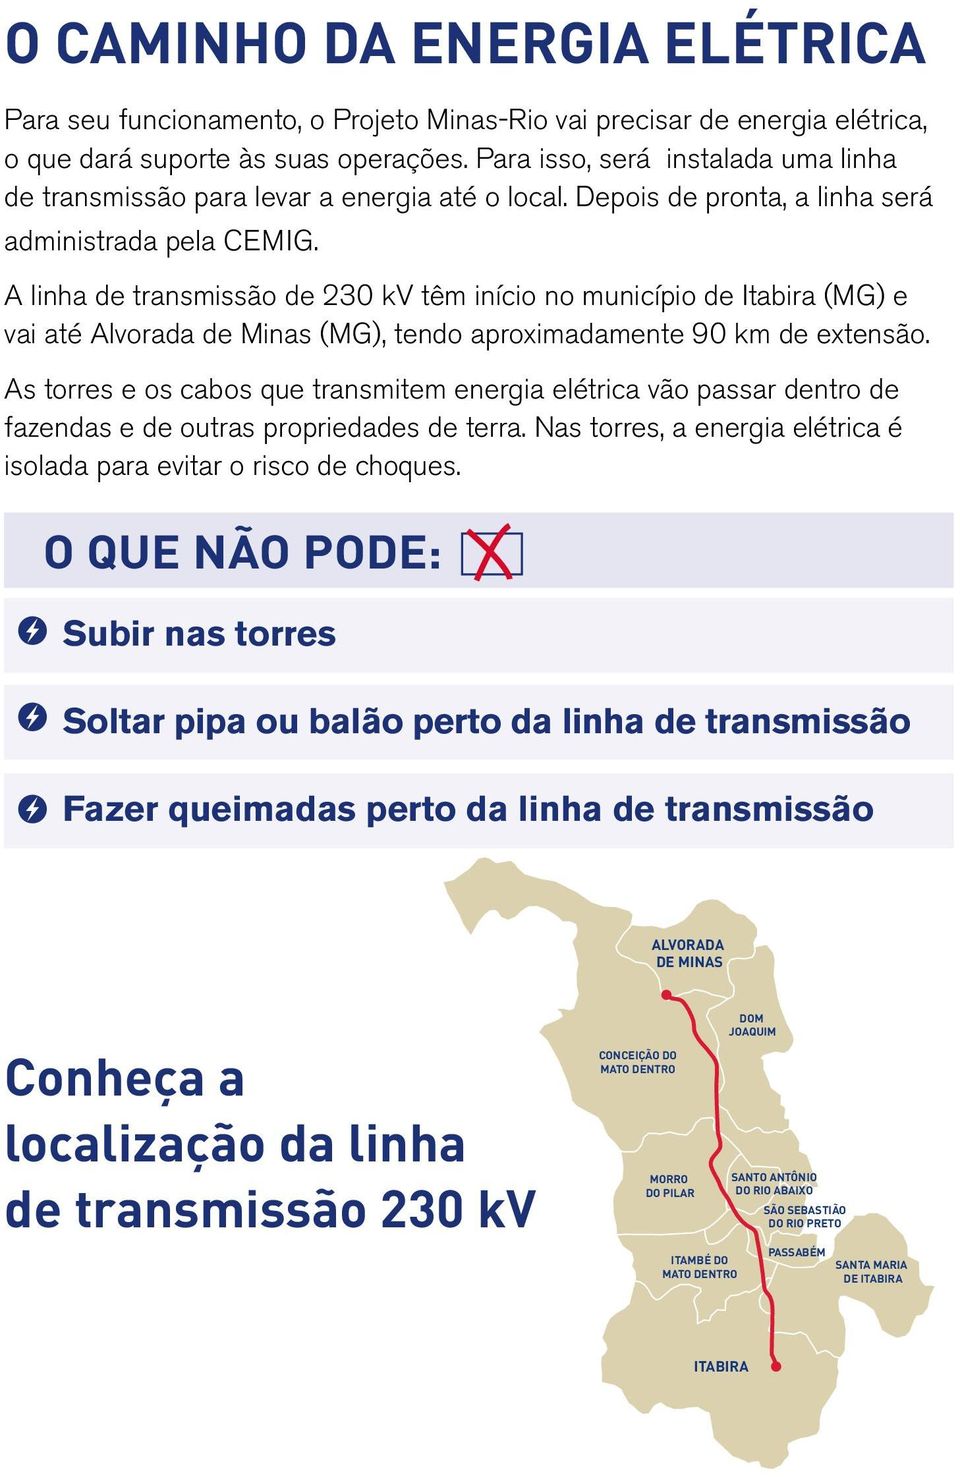 A linha de transmissão de 230 kv têm início no município de Itabira (MG) e vai até Alvorada de Minas (MG), tendo aproximadamente 90 km de extensão.